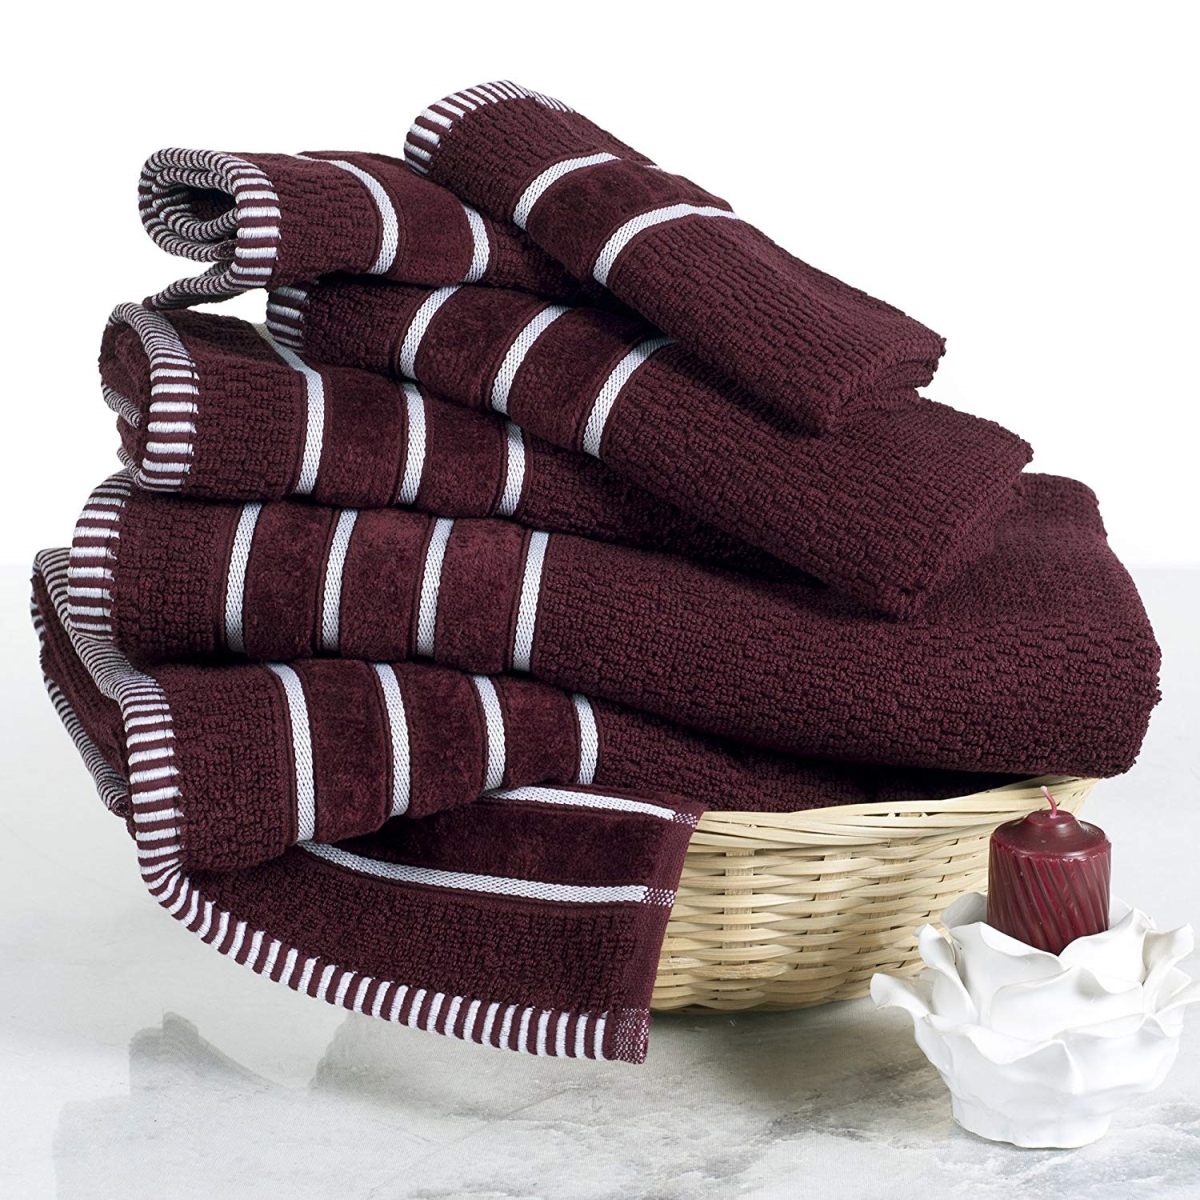 67a-74209 Home 100 Percent Cotton Weave 6 Piece Towel Set - Burgundy